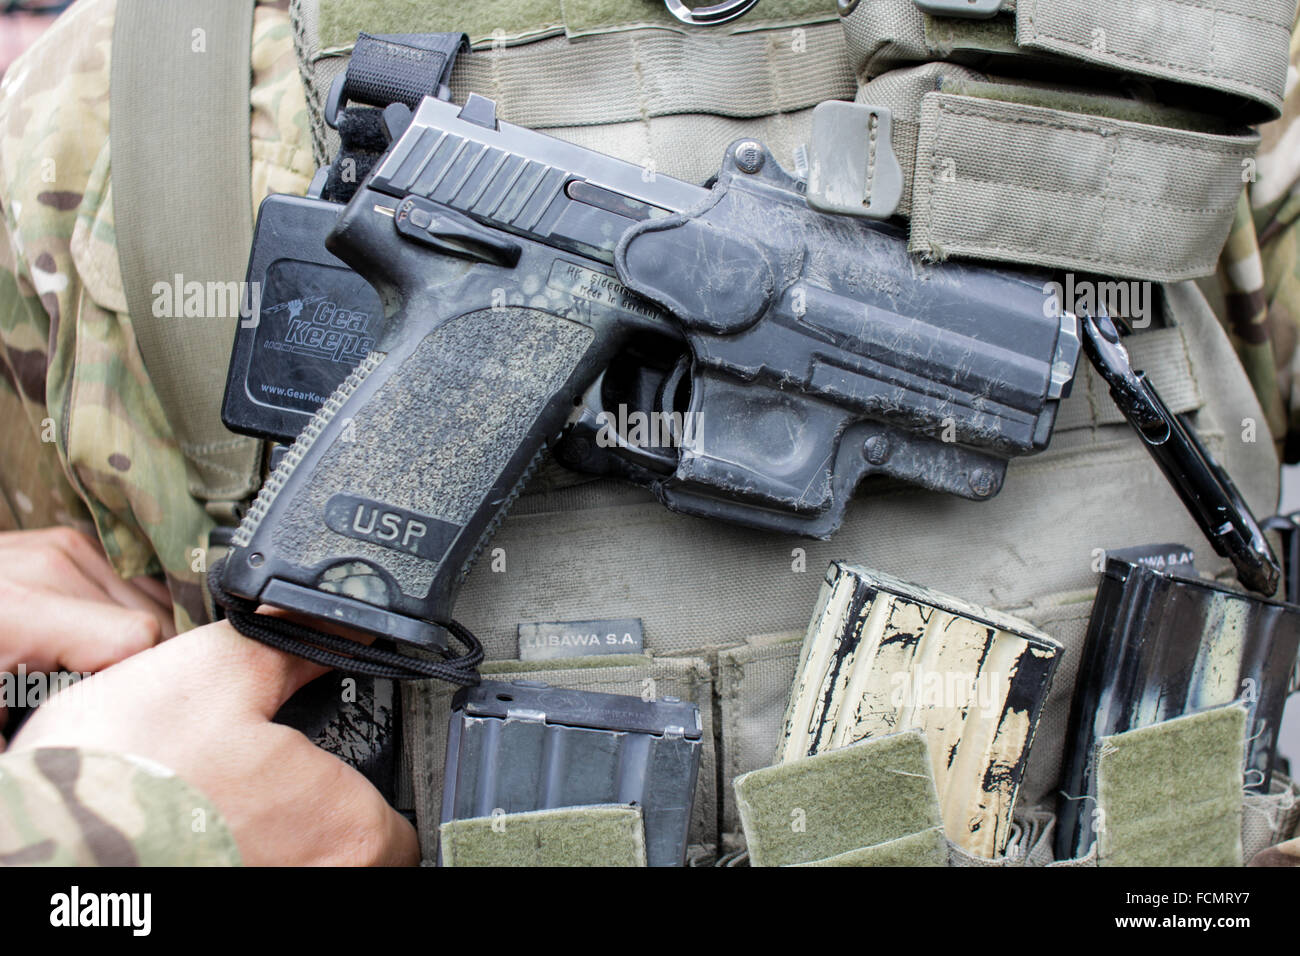 Heckler & Koch USP pistolet semi-automatique dans un étui escamotable Banque D'Images